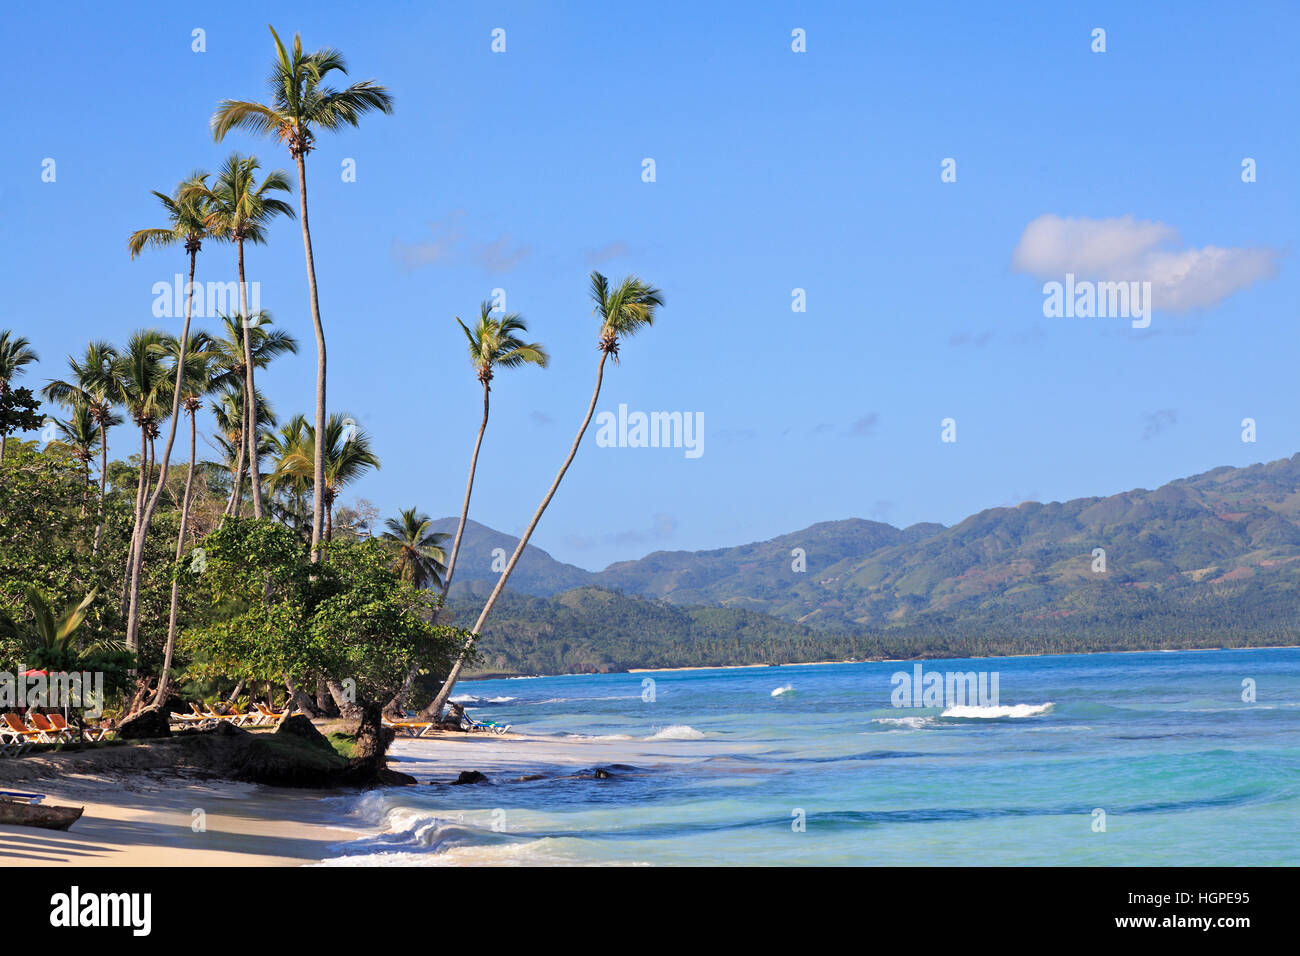 La Playta, tropical beach, palmiers et sable blanc,village de Las Galeras, République Dominicaine Banque D'Images